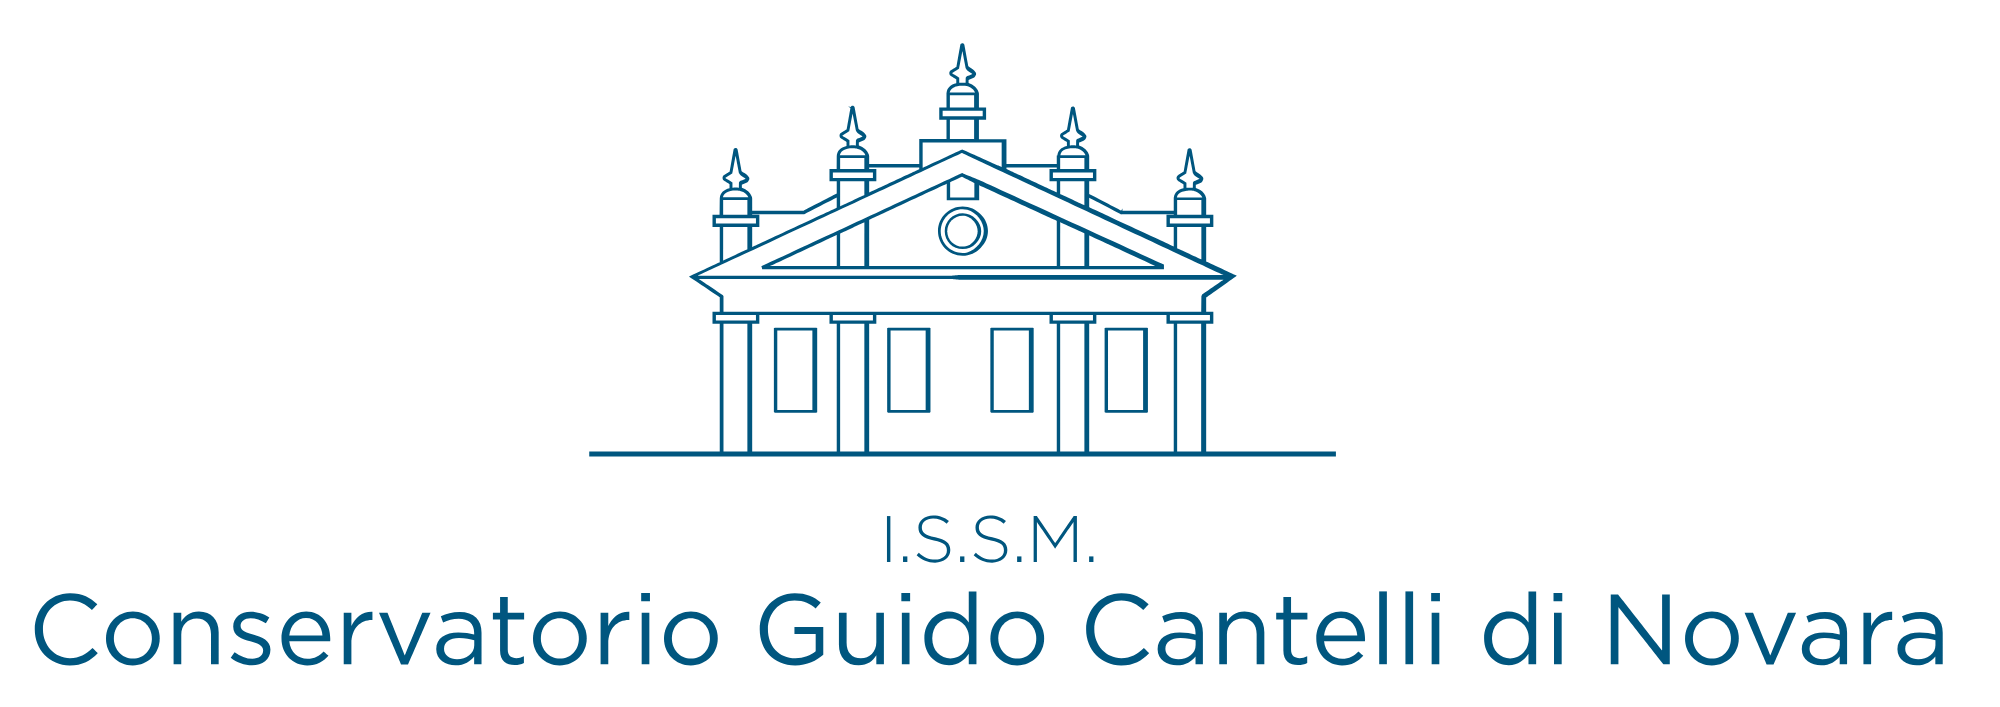 I.S.S.M  Conservatorio di Musica G. Cantelli di Novara